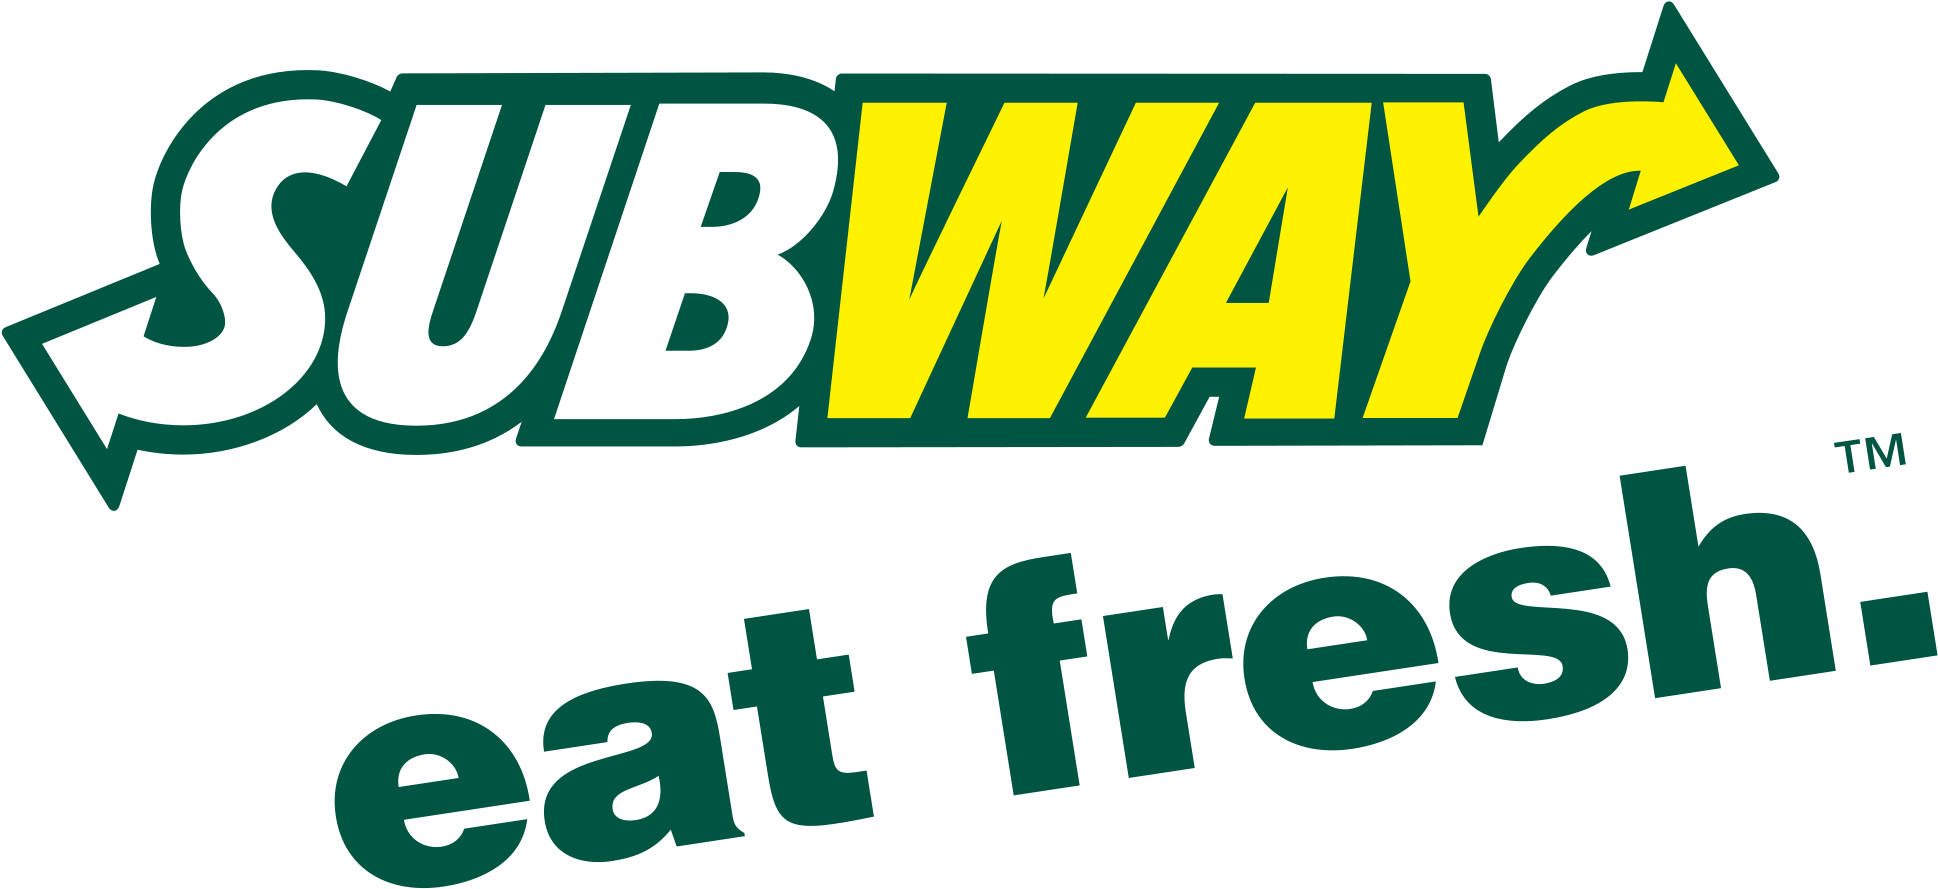 Subway Logo - Subway Gift Card, $15 (2000x960)